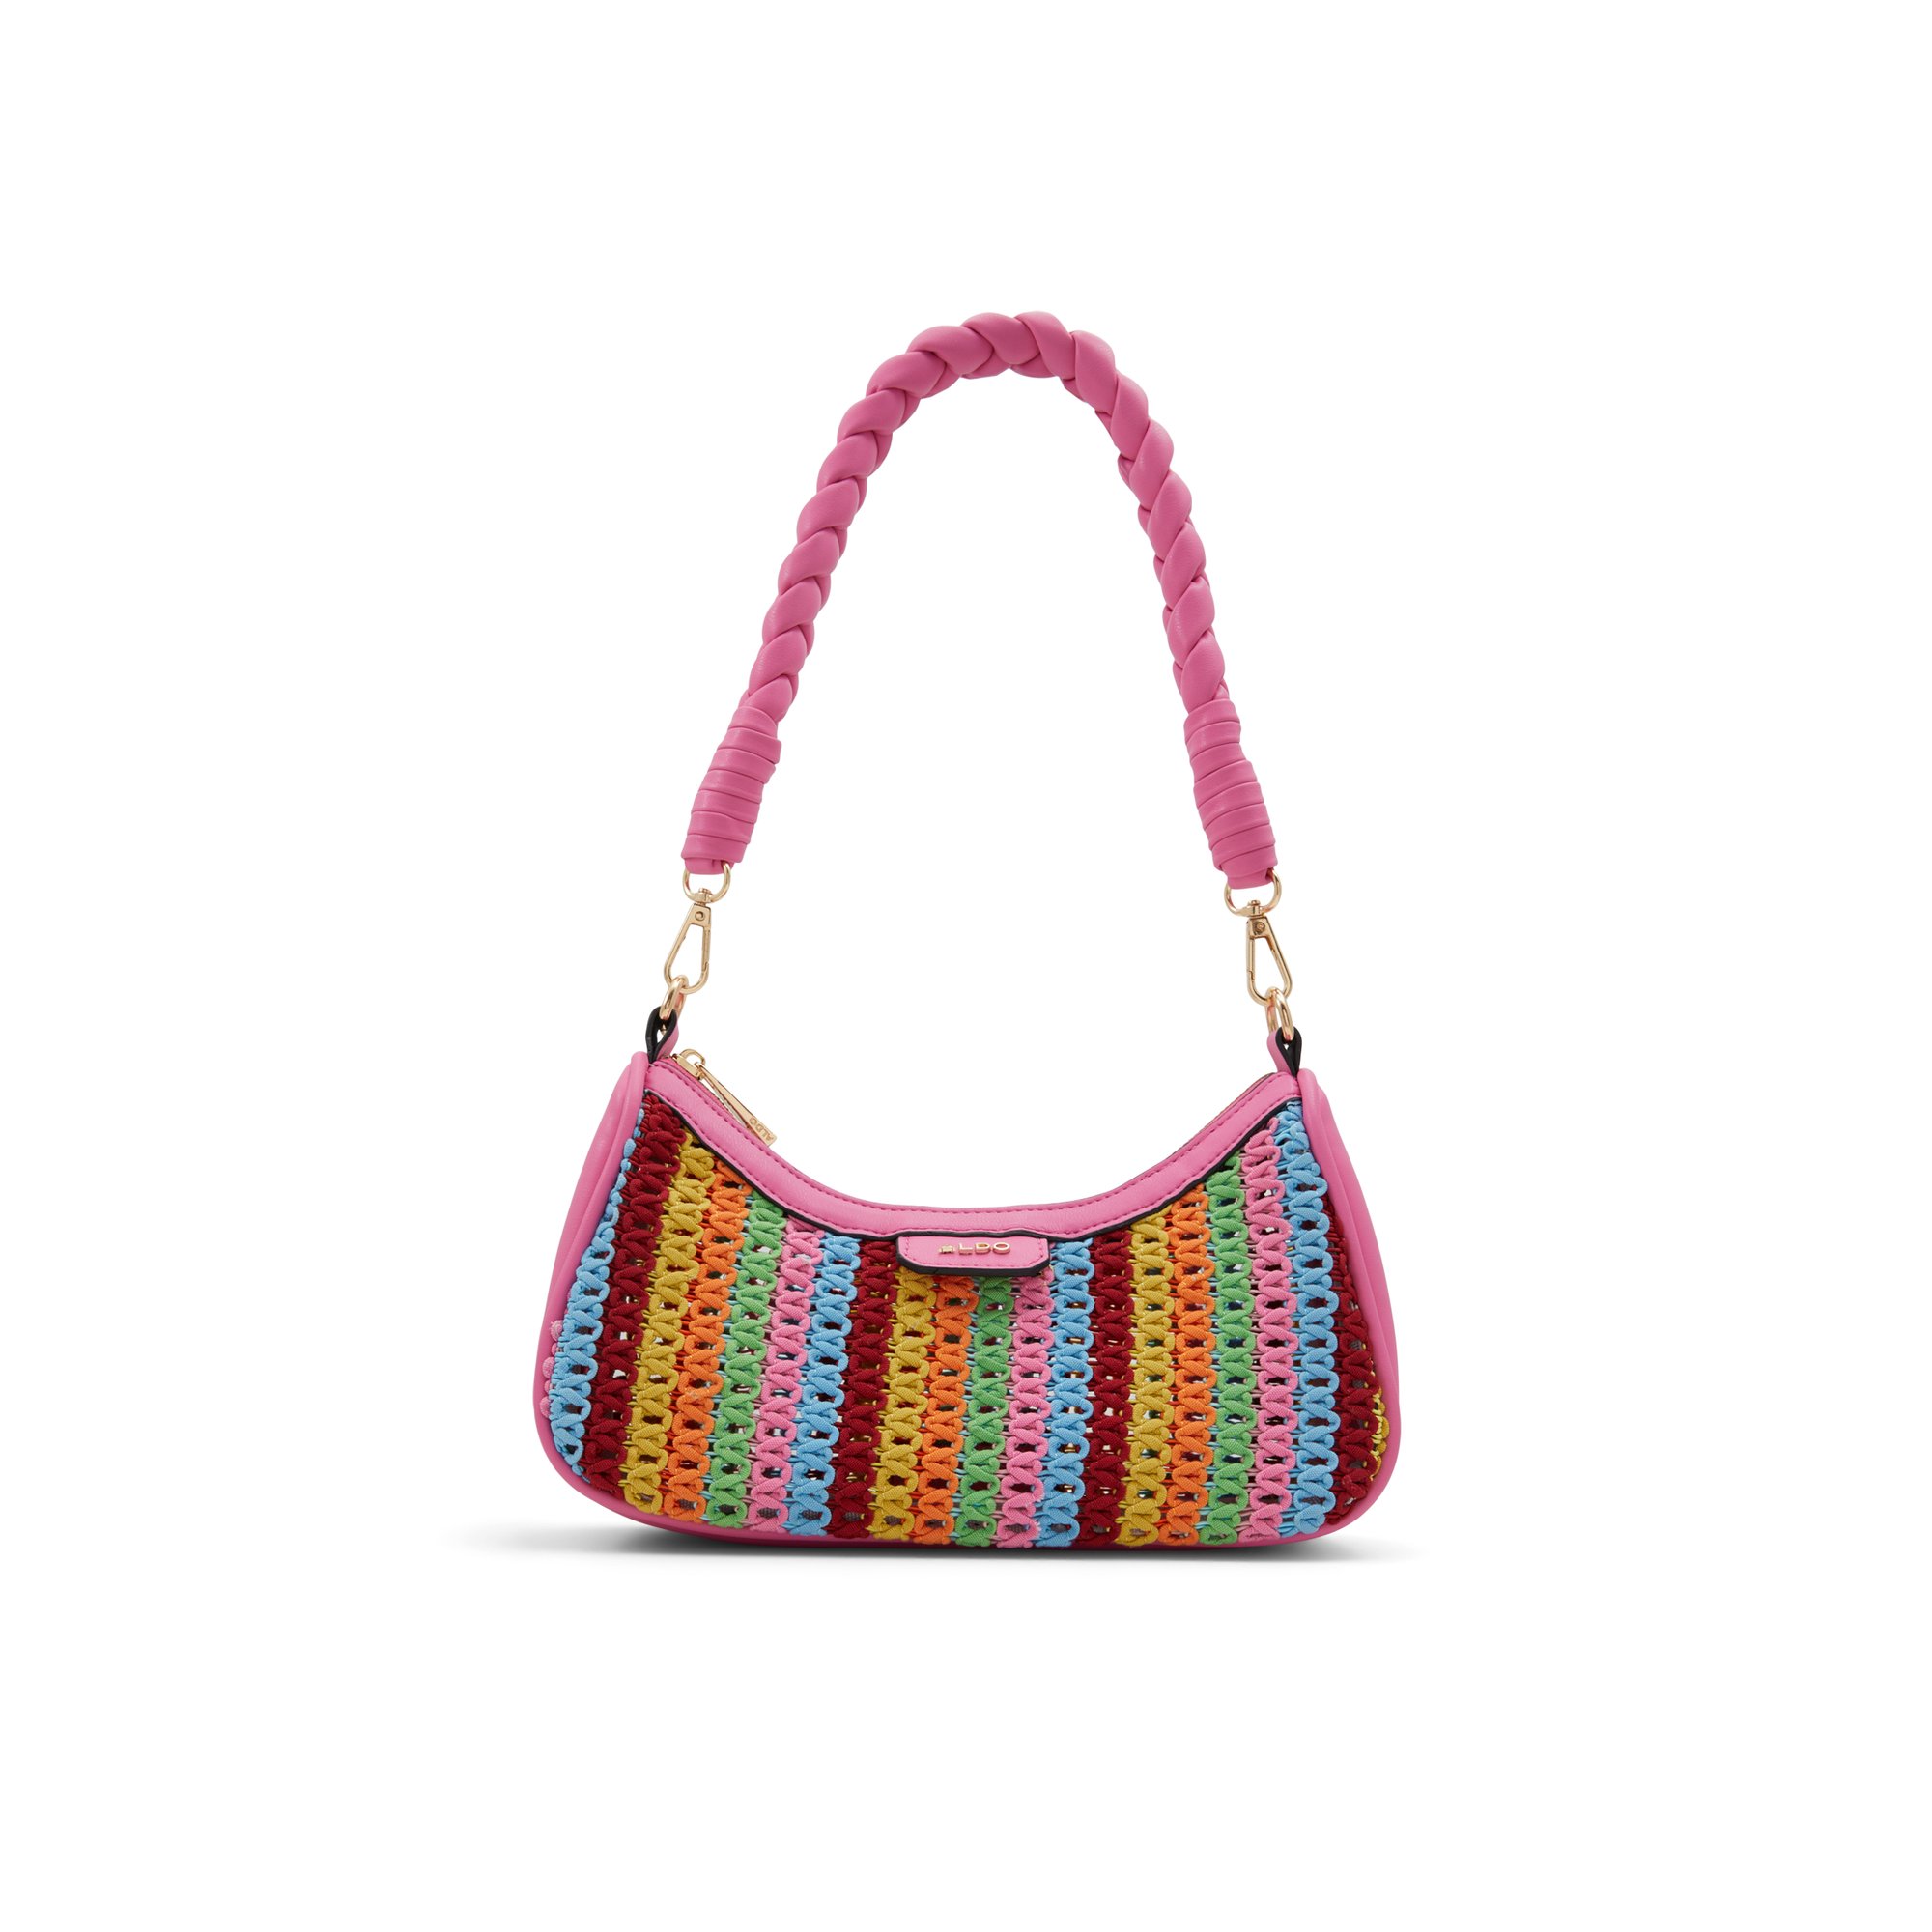 ALDO Emrys - Women's Handbags Shoulder Bags - Pink